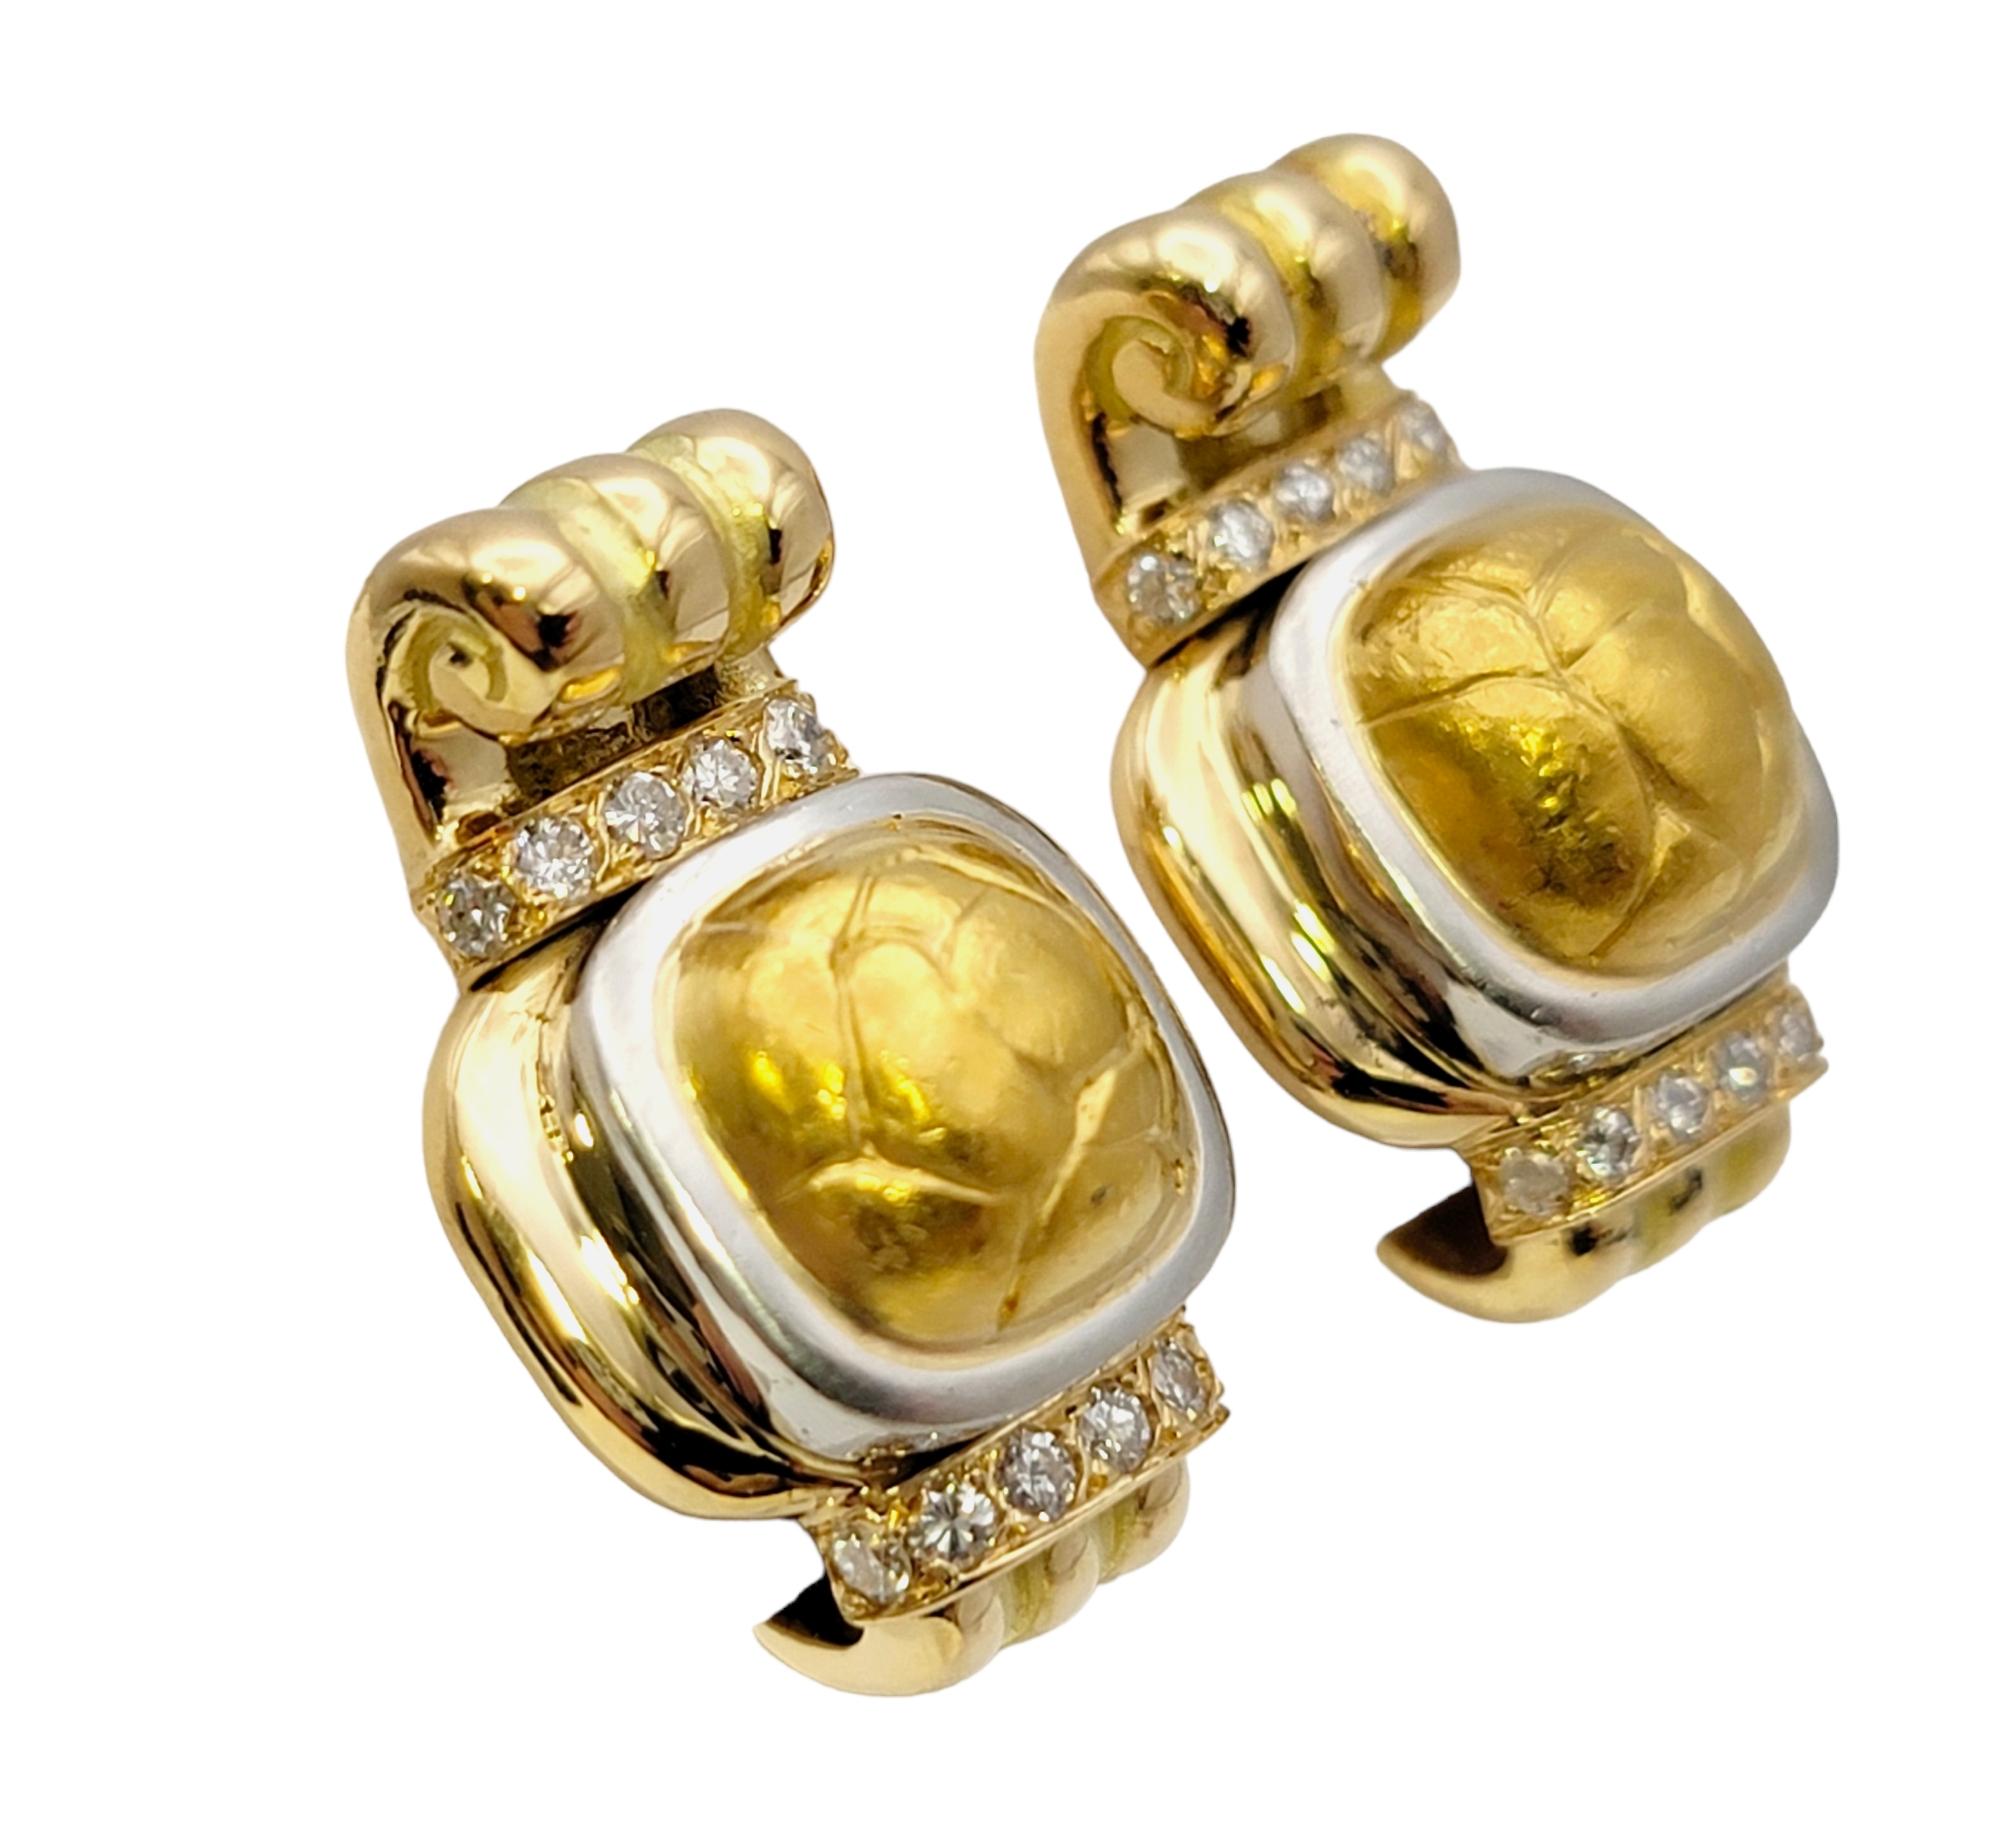 Elegante Designer-Ohrringe des französischen Luxusdesigners Chaumet. Das luxuriöse Paar aus 18-karätigem Gelbgold besticht durch sein einzigartiges Design und seine exquisite Handwerkskunst und ist ein raffiniertes Statement am Ohr.   

Diese